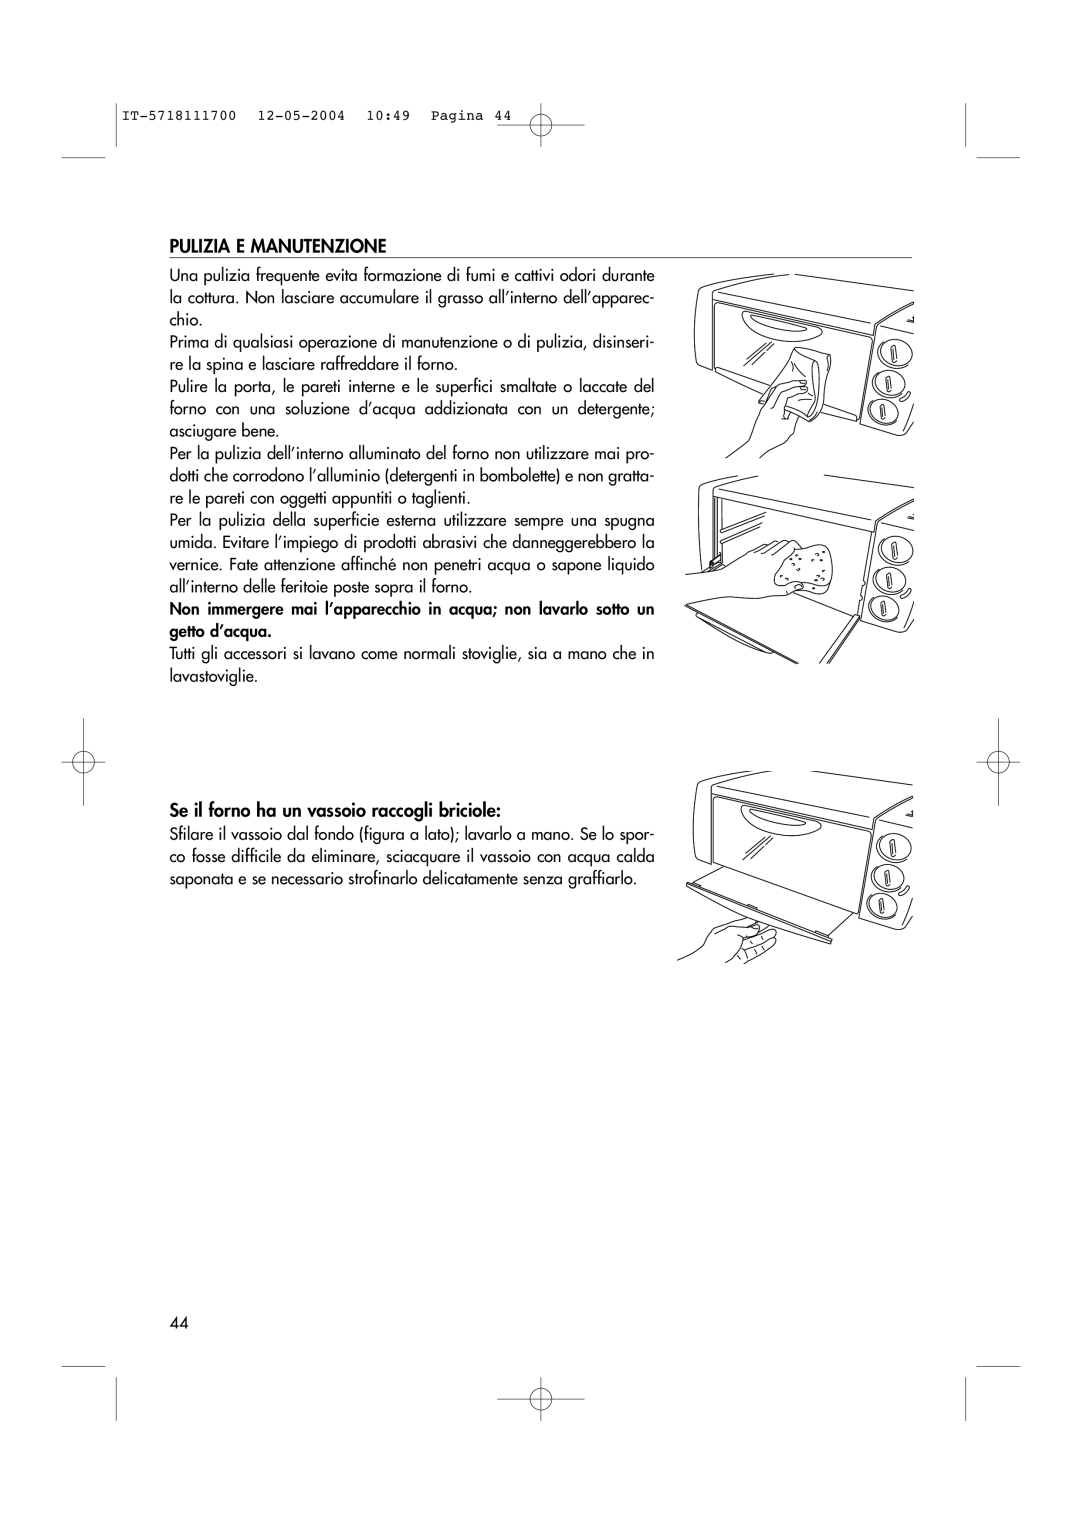 DeLonghi EO1200 Series manual Pulizia E Manutenzione, Se il forno ha un vassoio raccogli briciole 